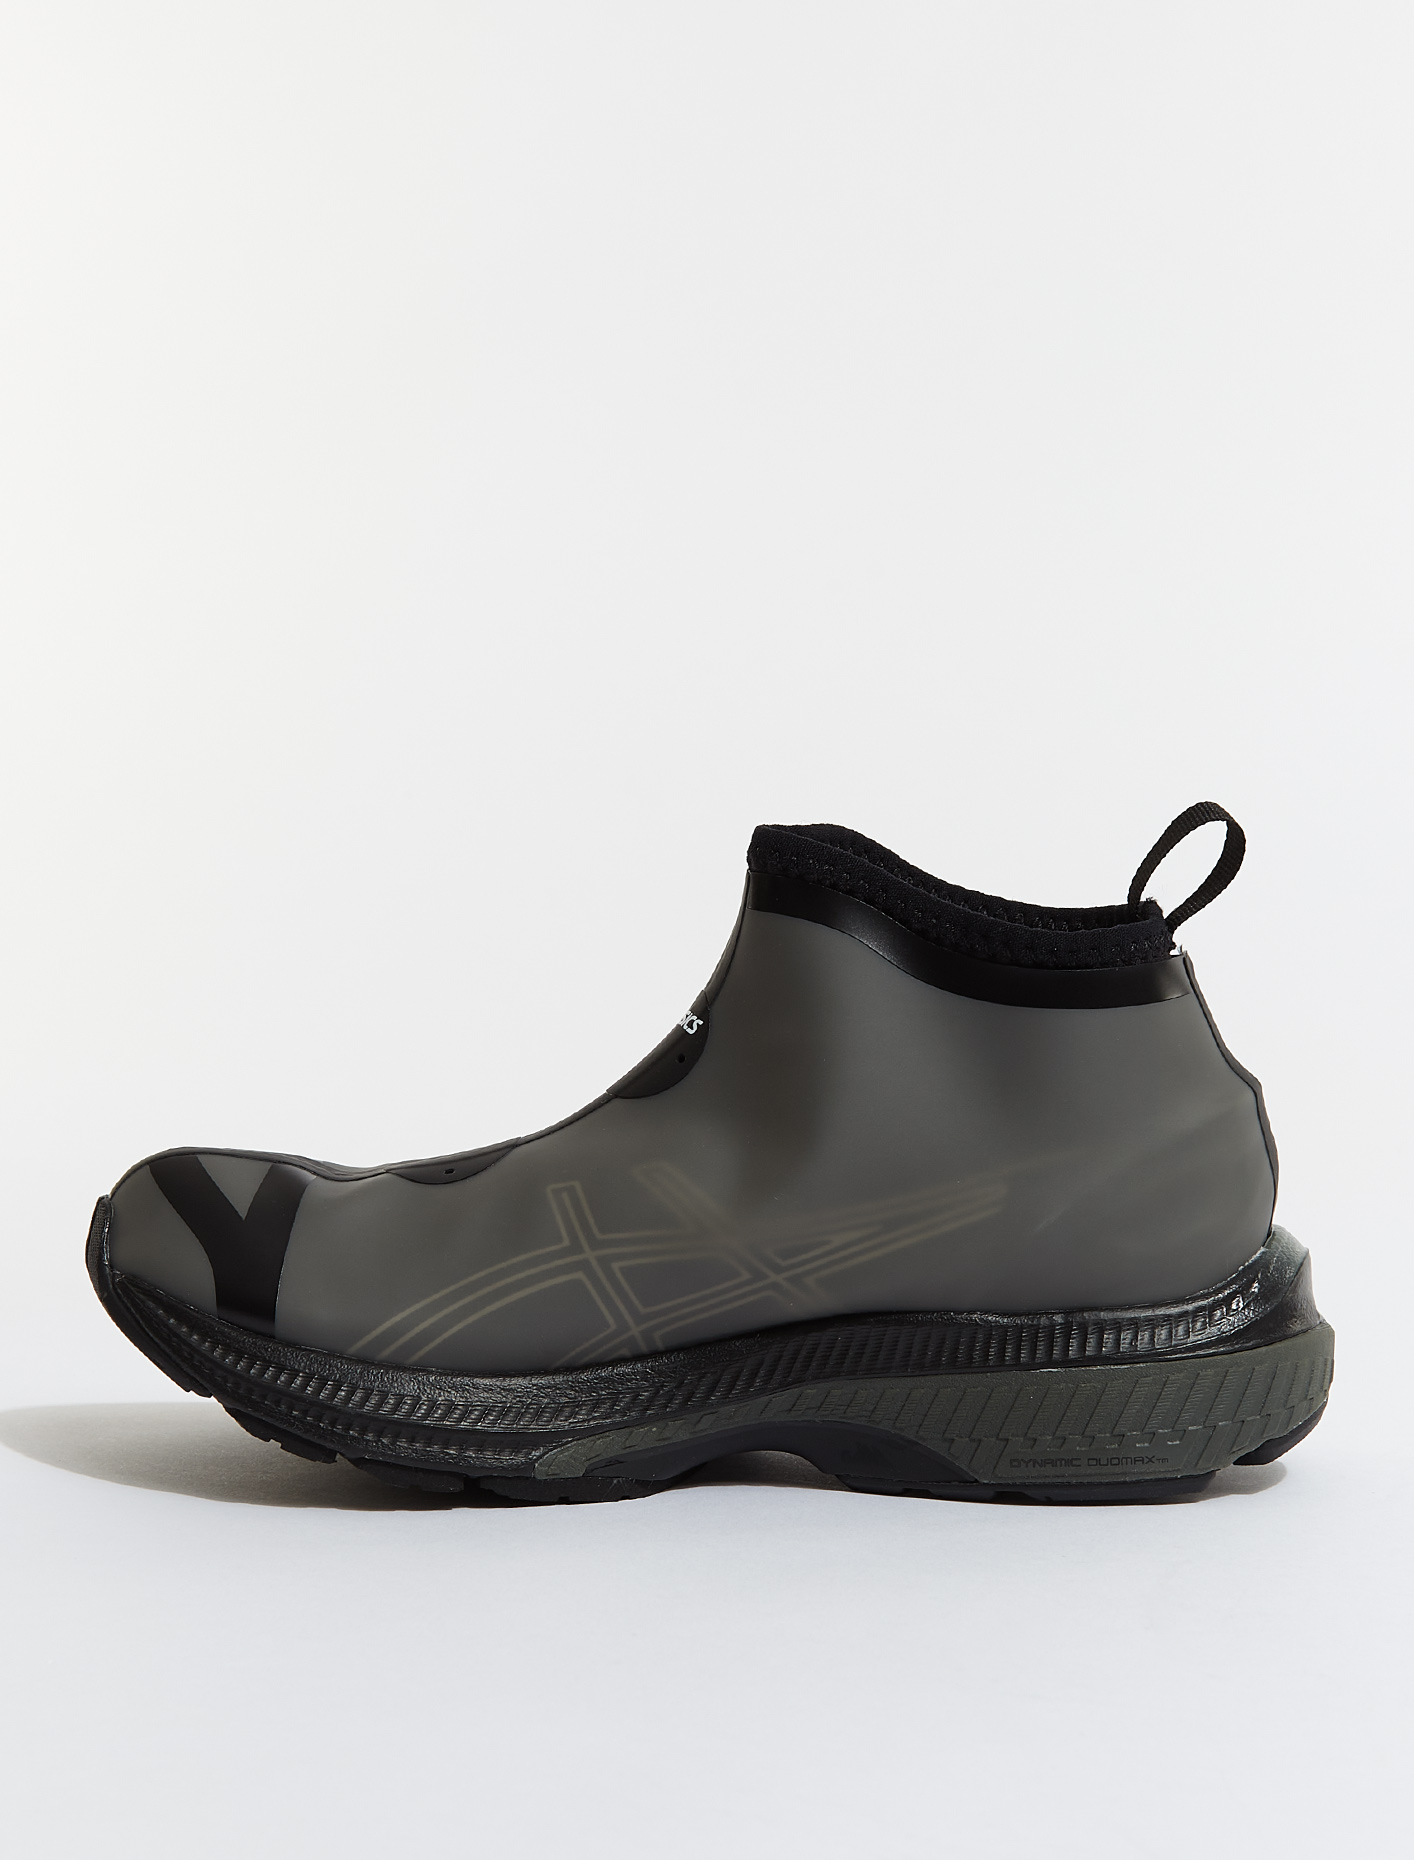 ASICS x Vivienne Westwood GEL-KAYANO 27 LTX Sneaker in Black | Voo ...